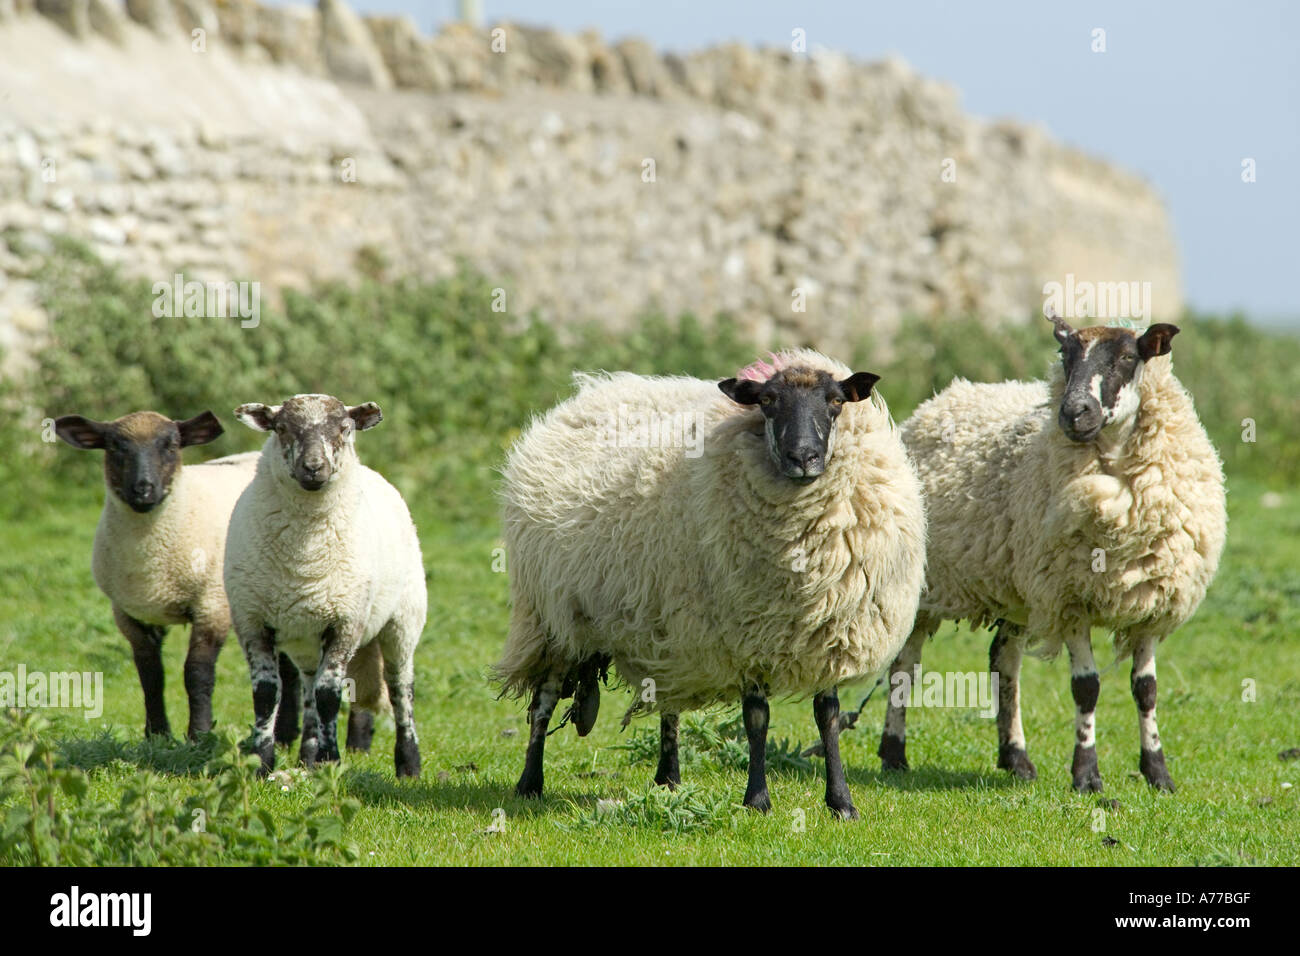 Une famille de moutons suffolk face noire dans un champ. Banque D'Images